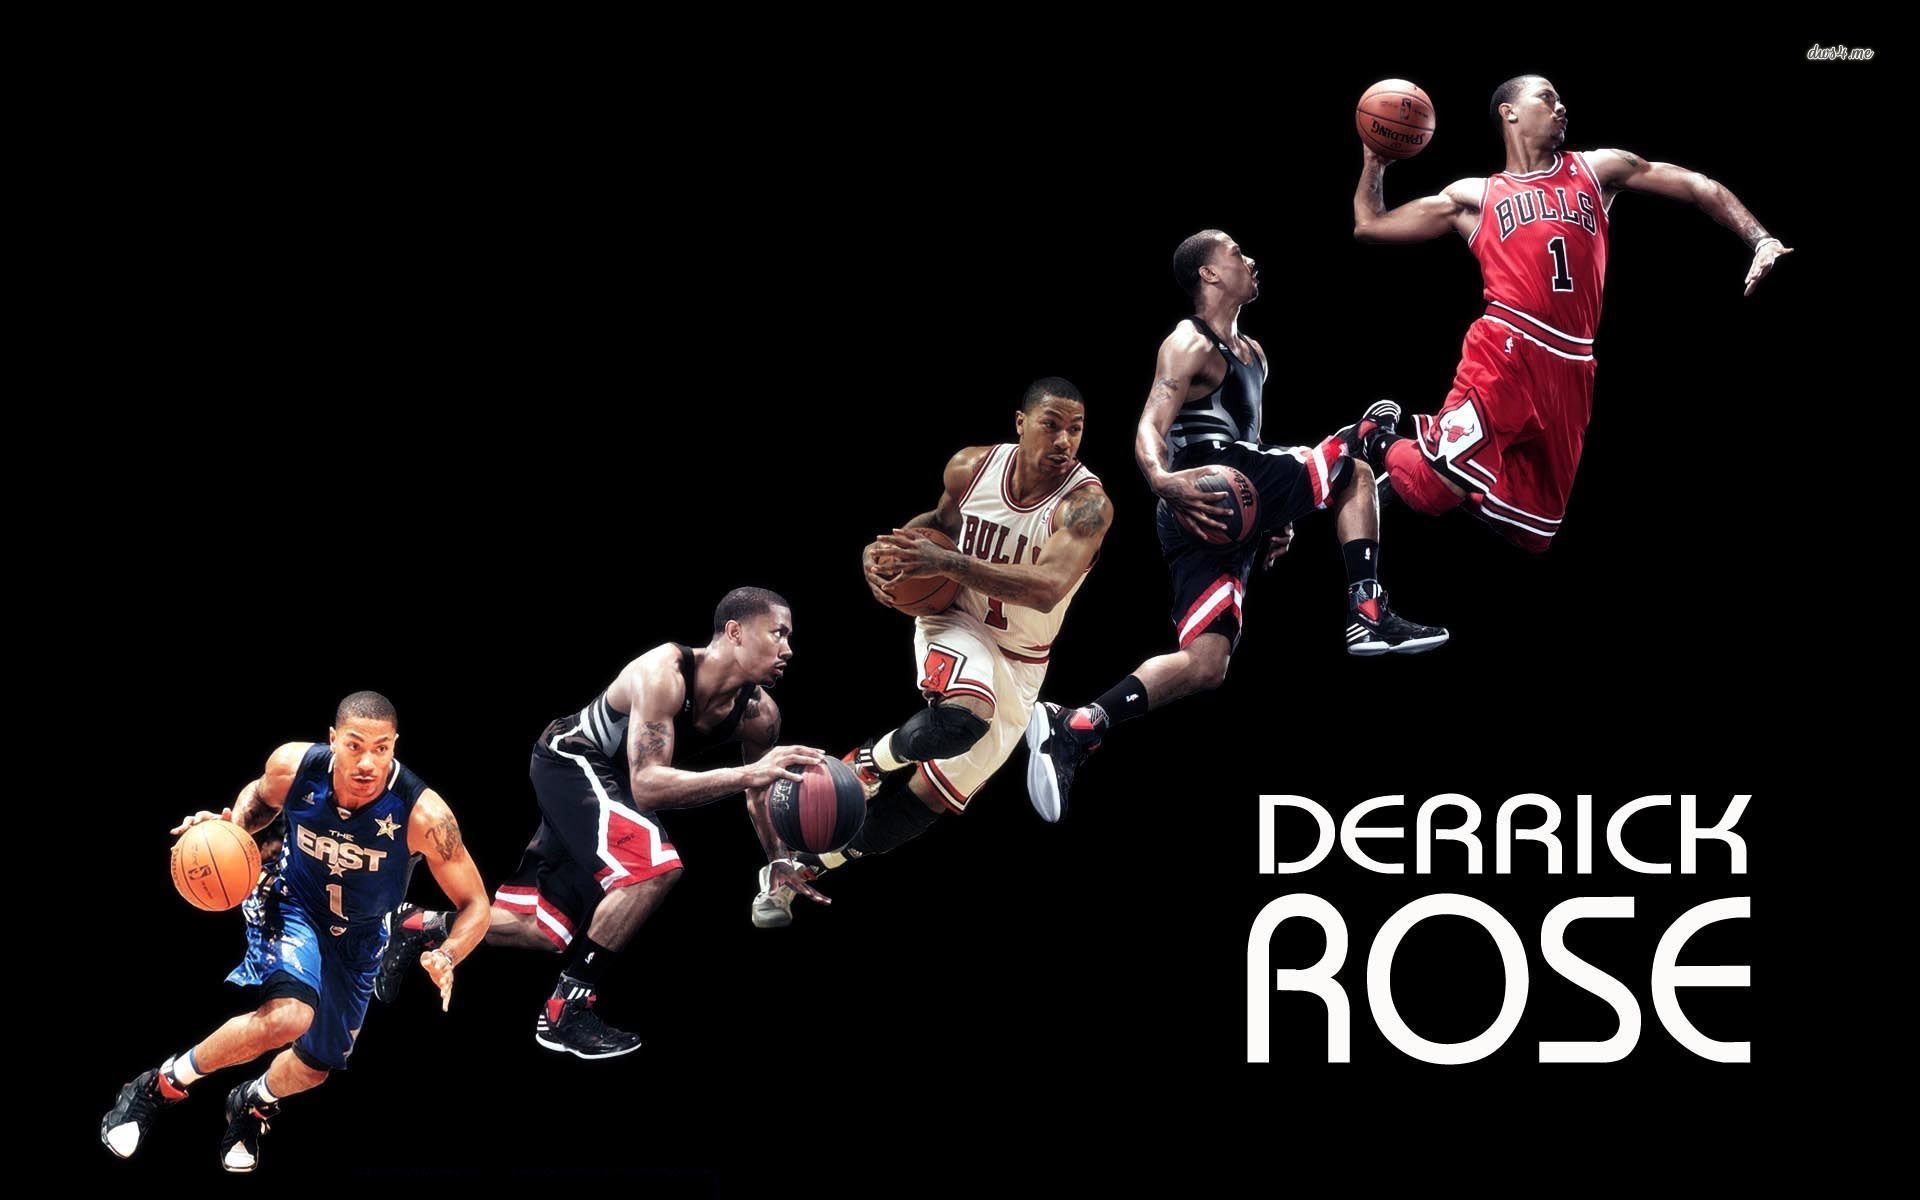 Derrick Rose, chicago bulls, basketball, nba, sport, sports ...